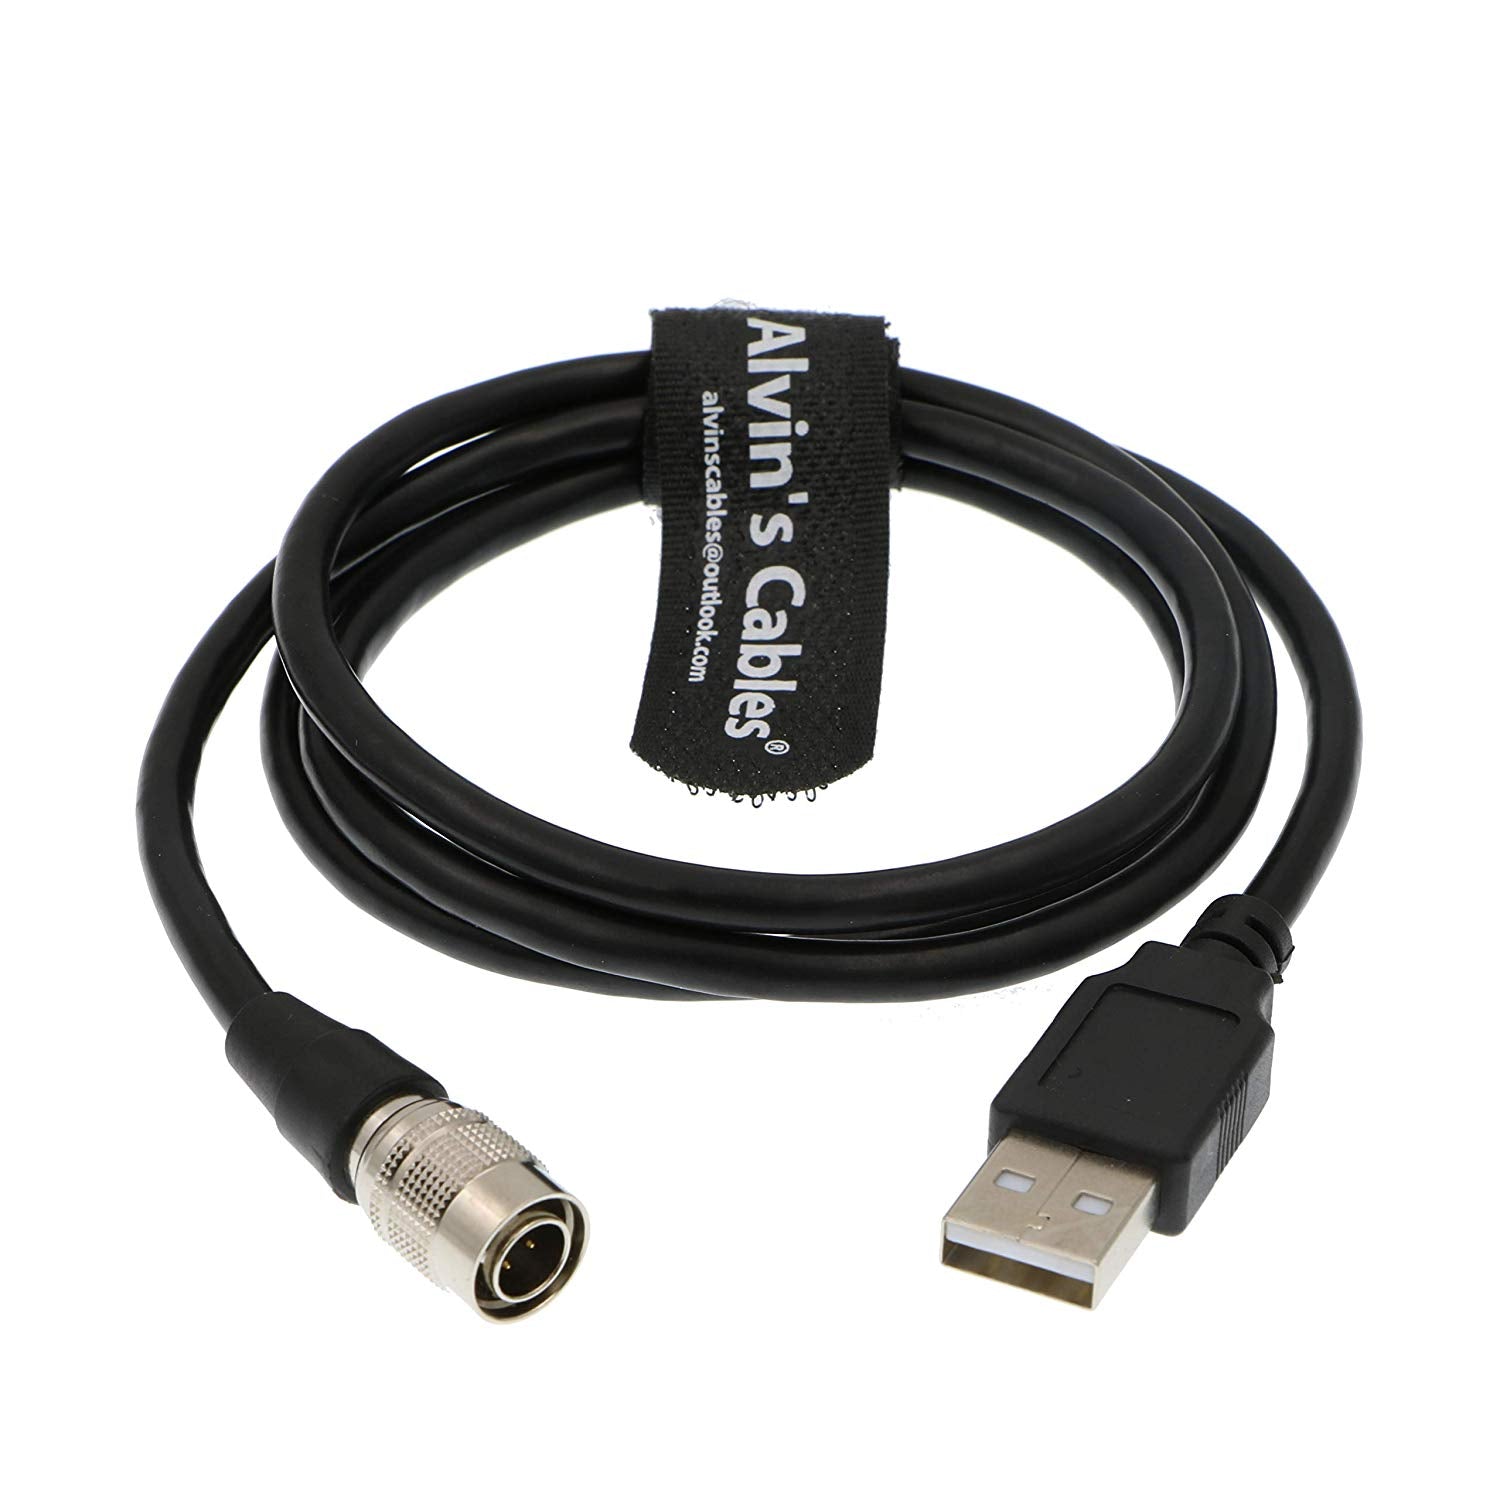 Alvin's Cables 4-poliger Hirose-Stecker auf USB-Datenkabel für Kamera-Computer-Video